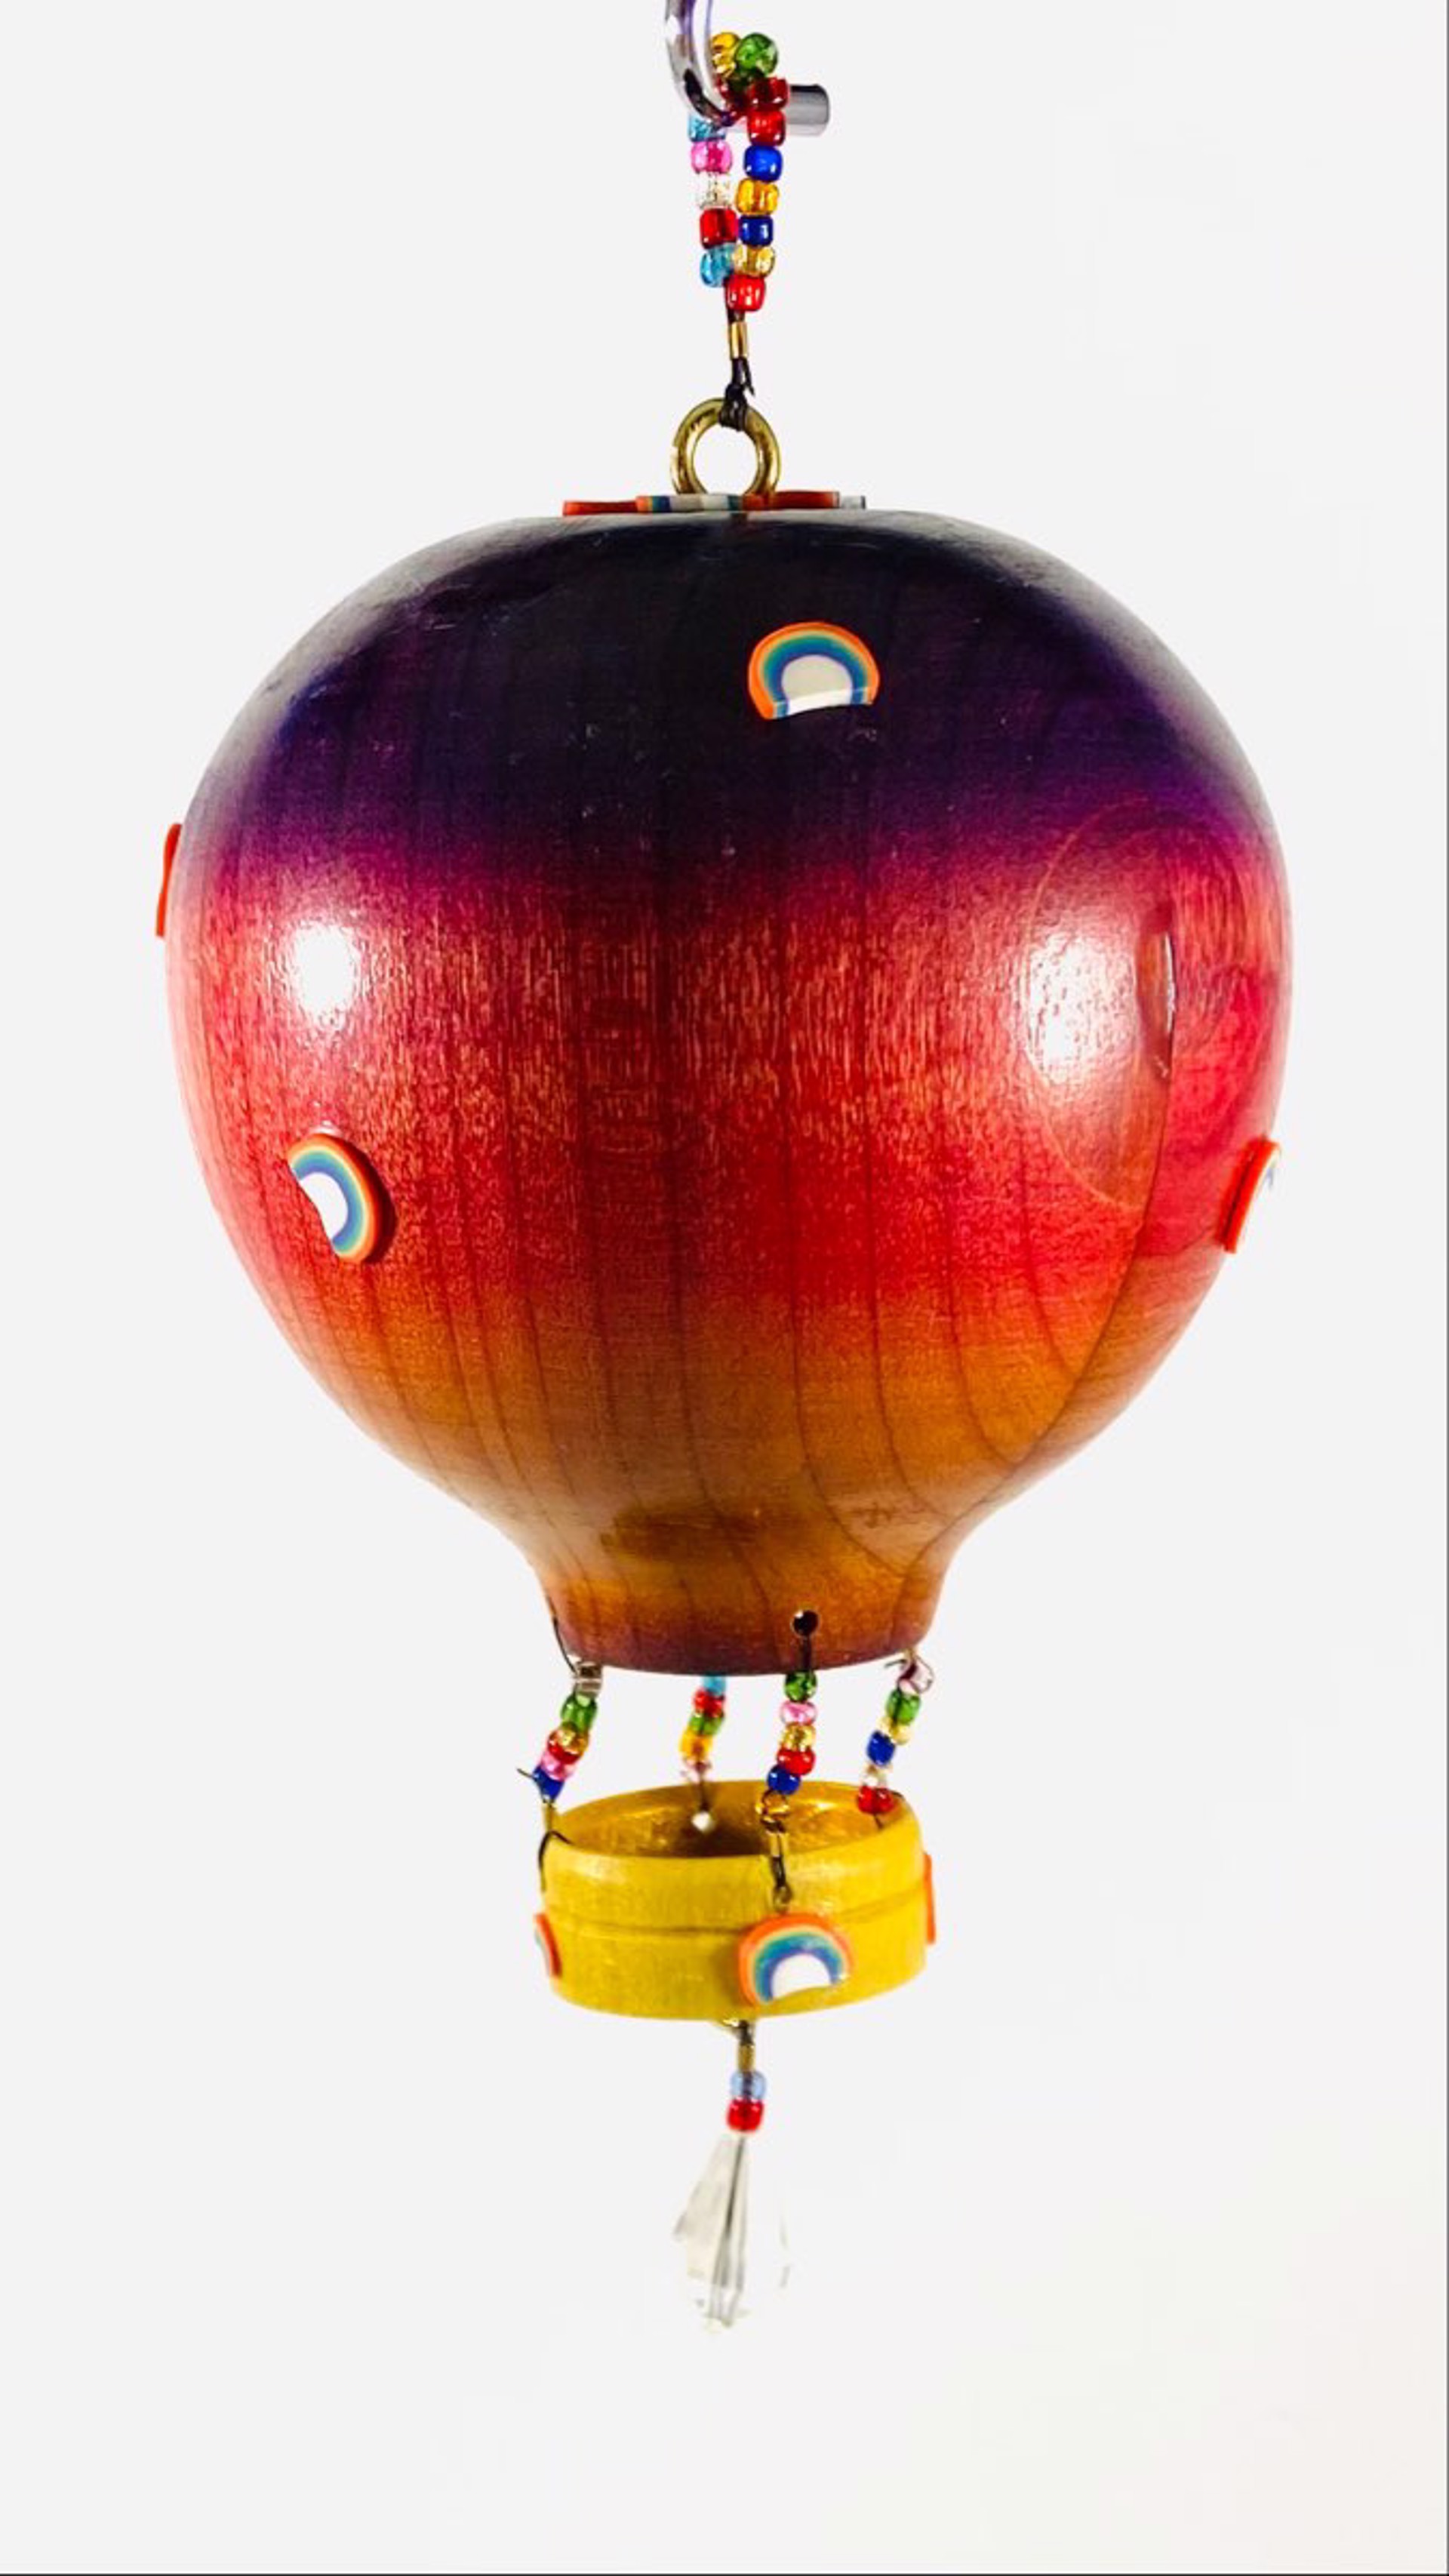 MT22-22 Whimsical Hot Air Balloon Ornament by Marc Tannenbaum